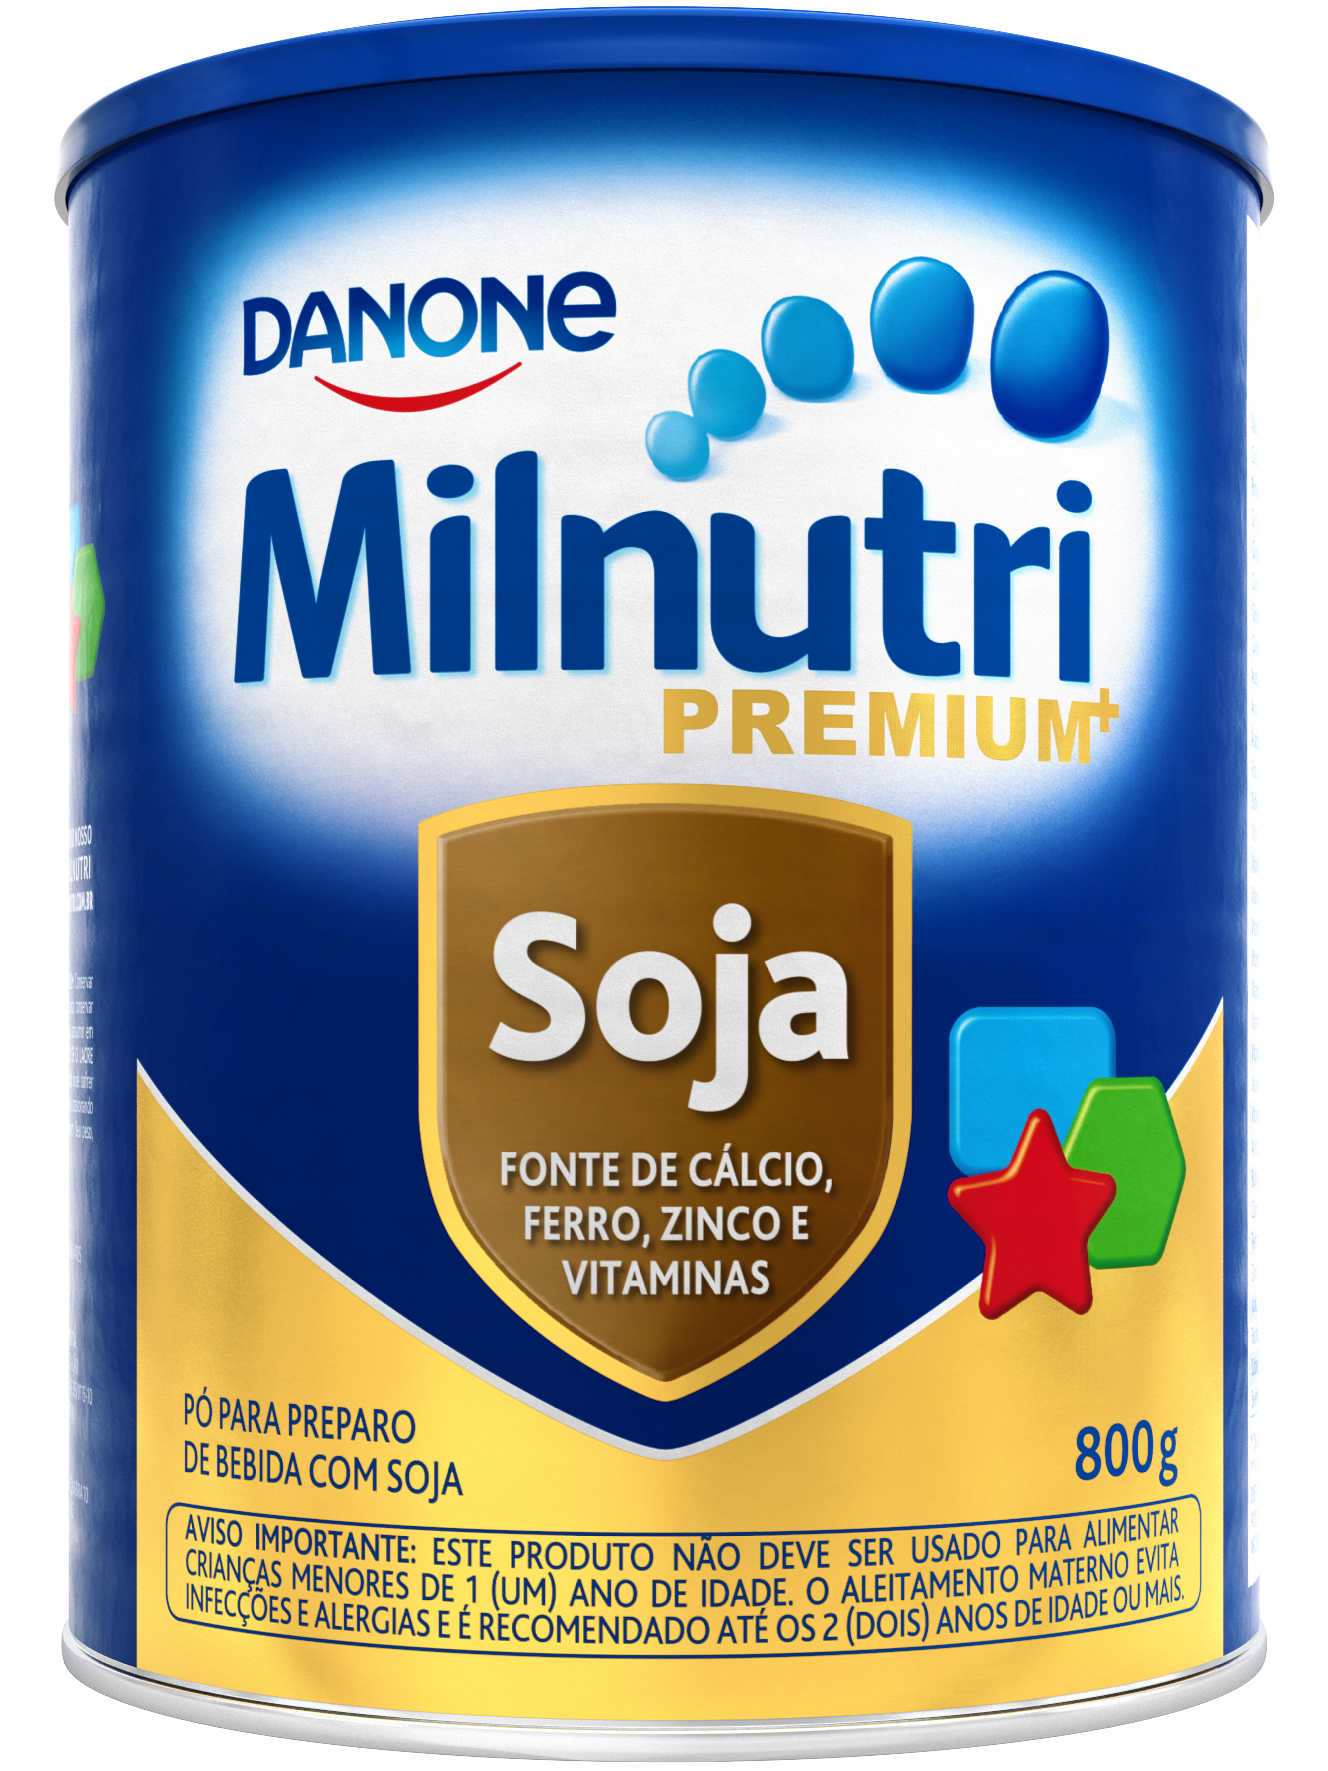 Leite Milnutri Premium Soja 800g